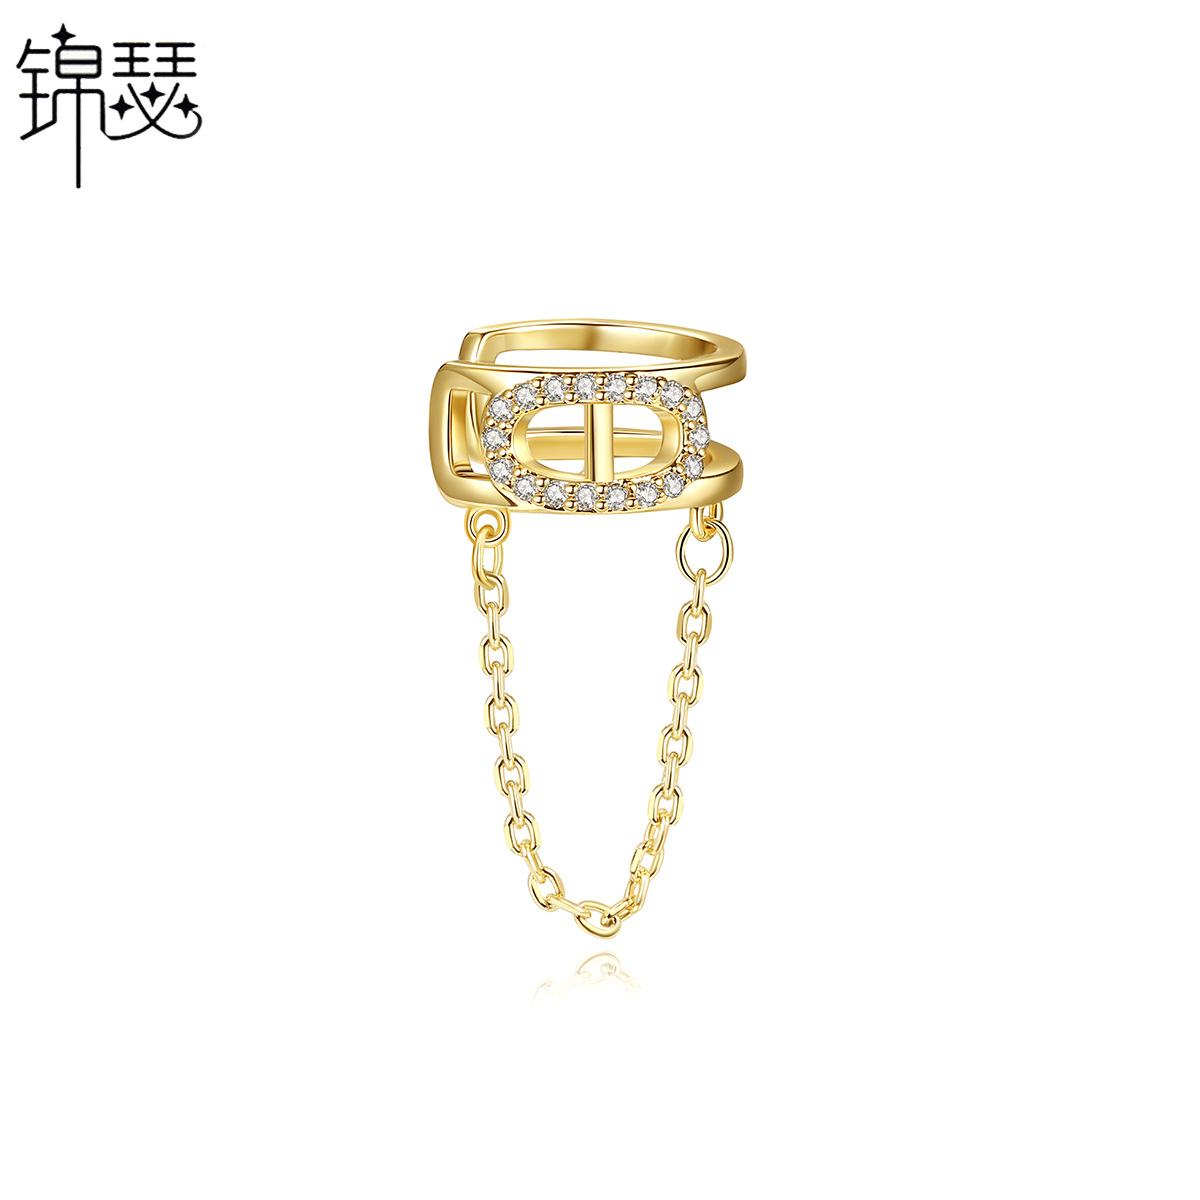 Korean style stud earrings chain earrings for women